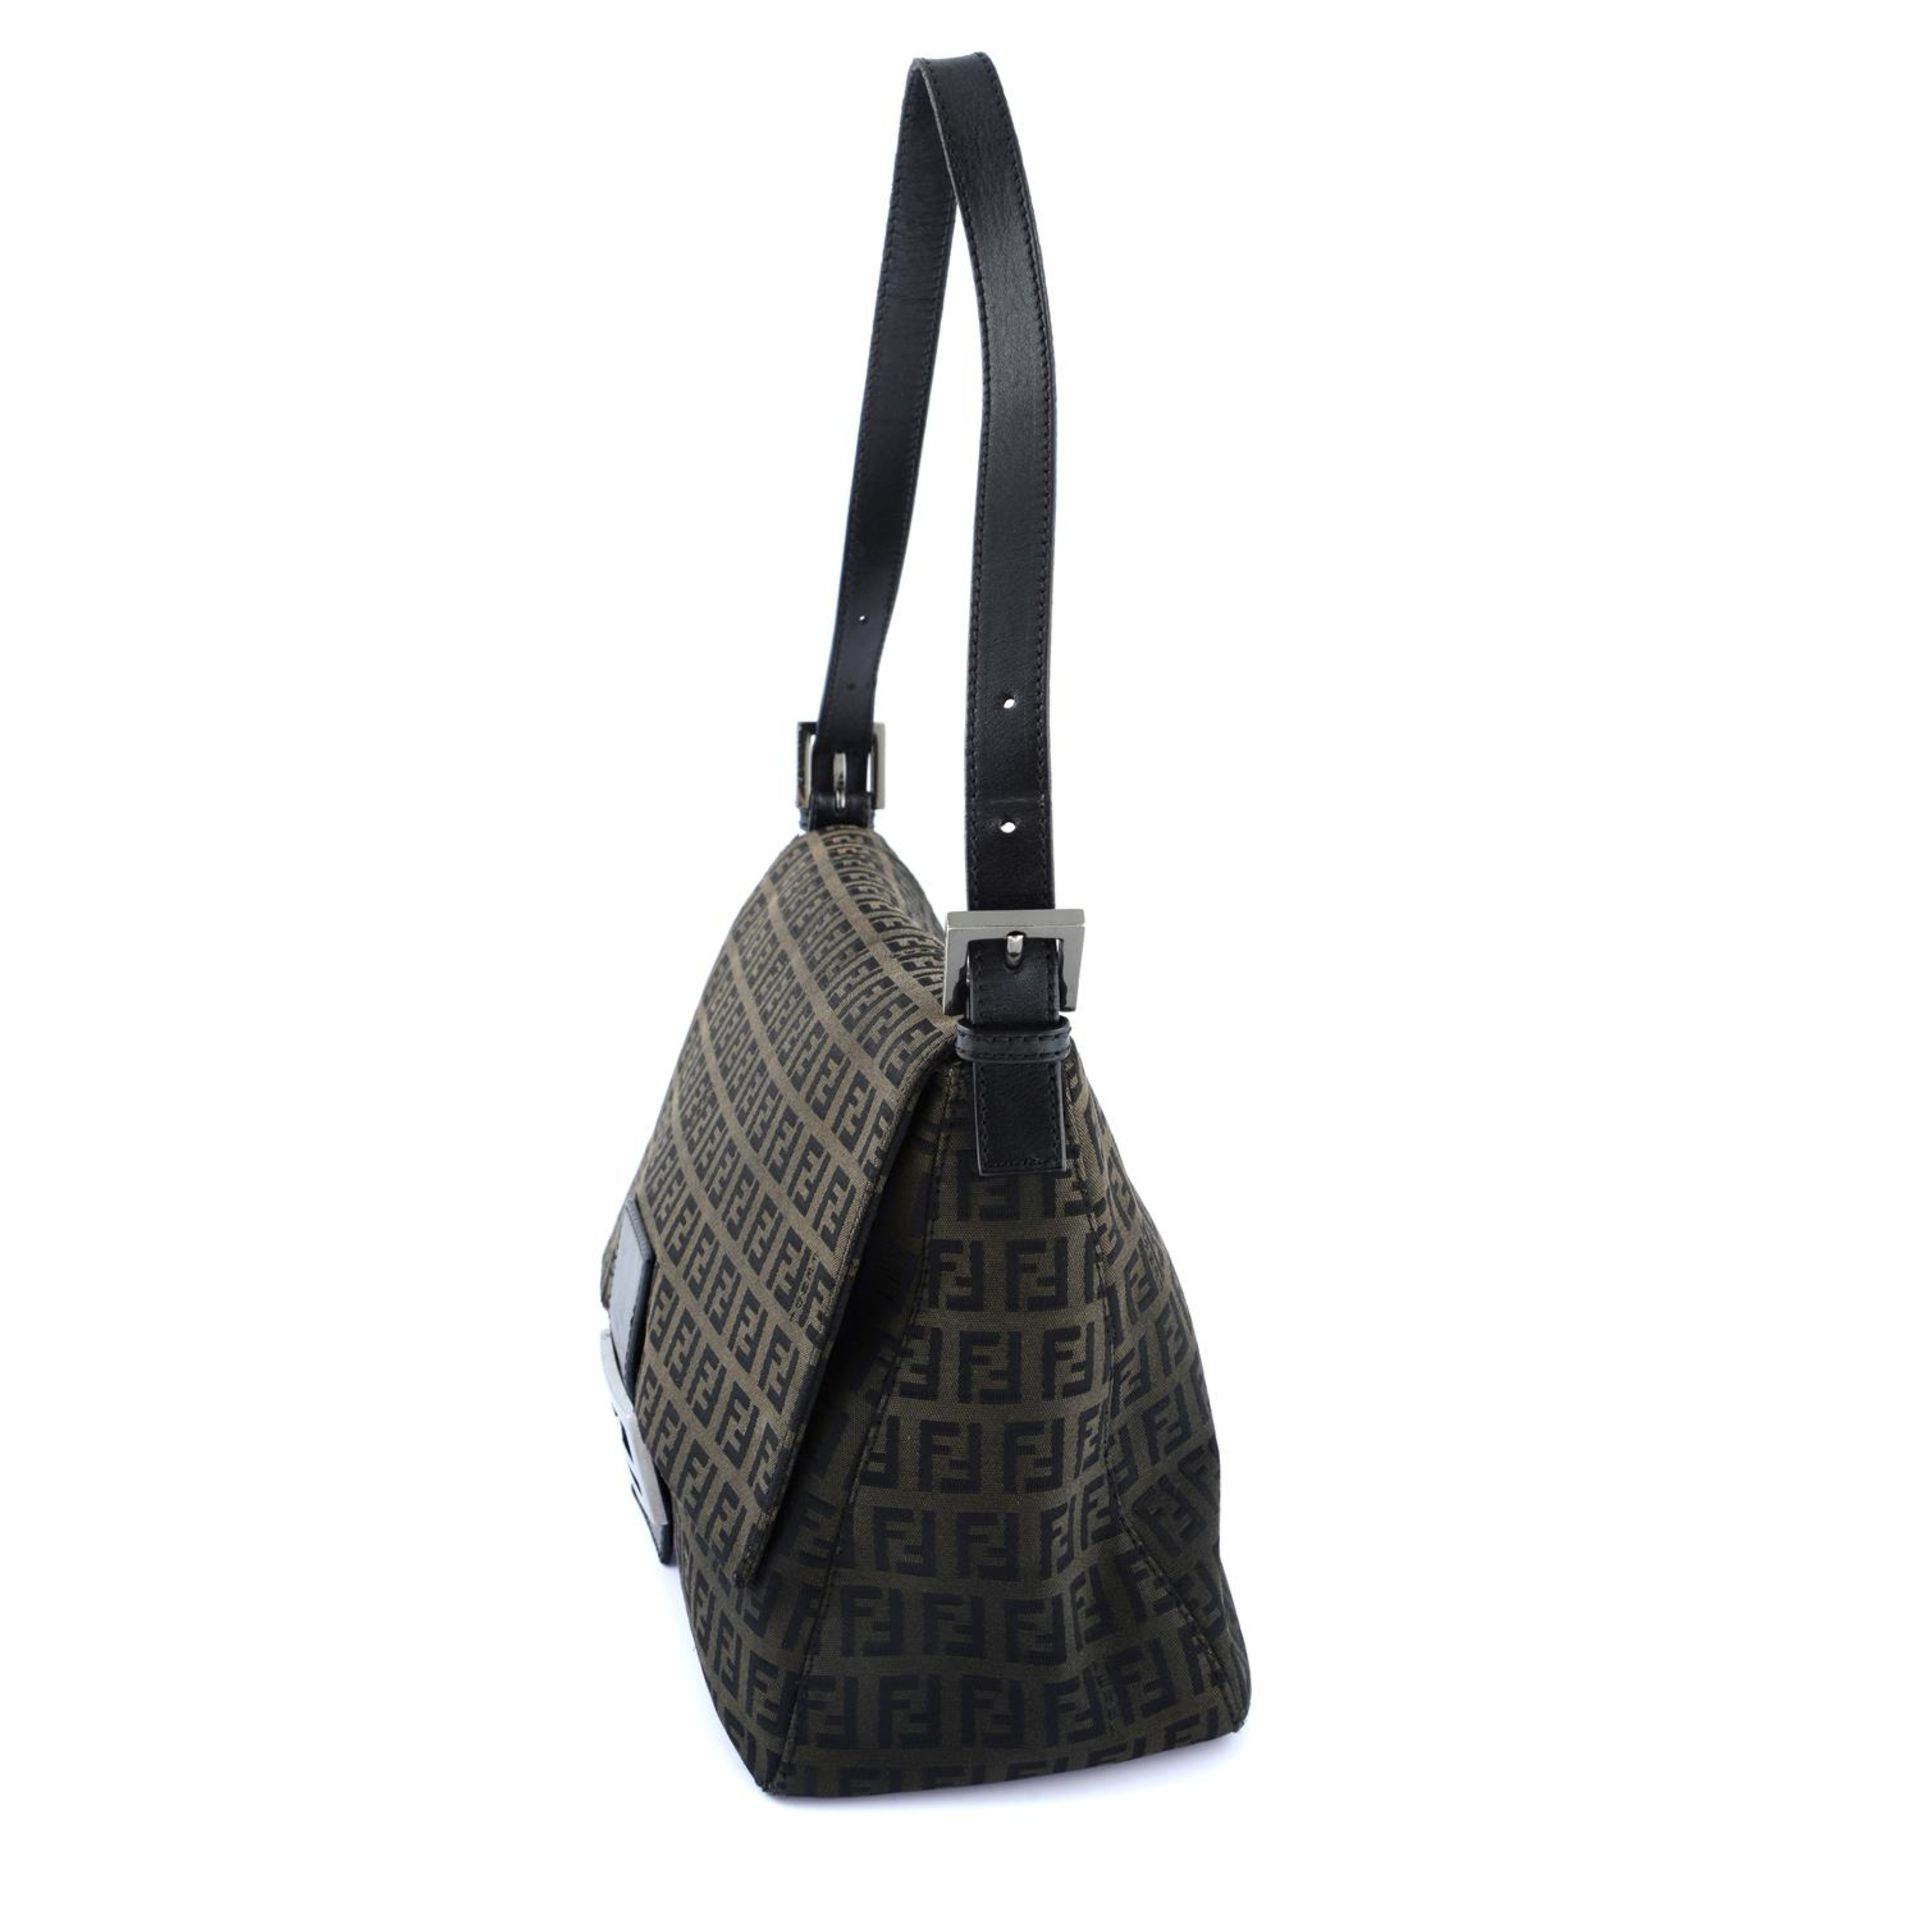 FENDI - a brown Mama Baguette handbag. - Image 3 of 4